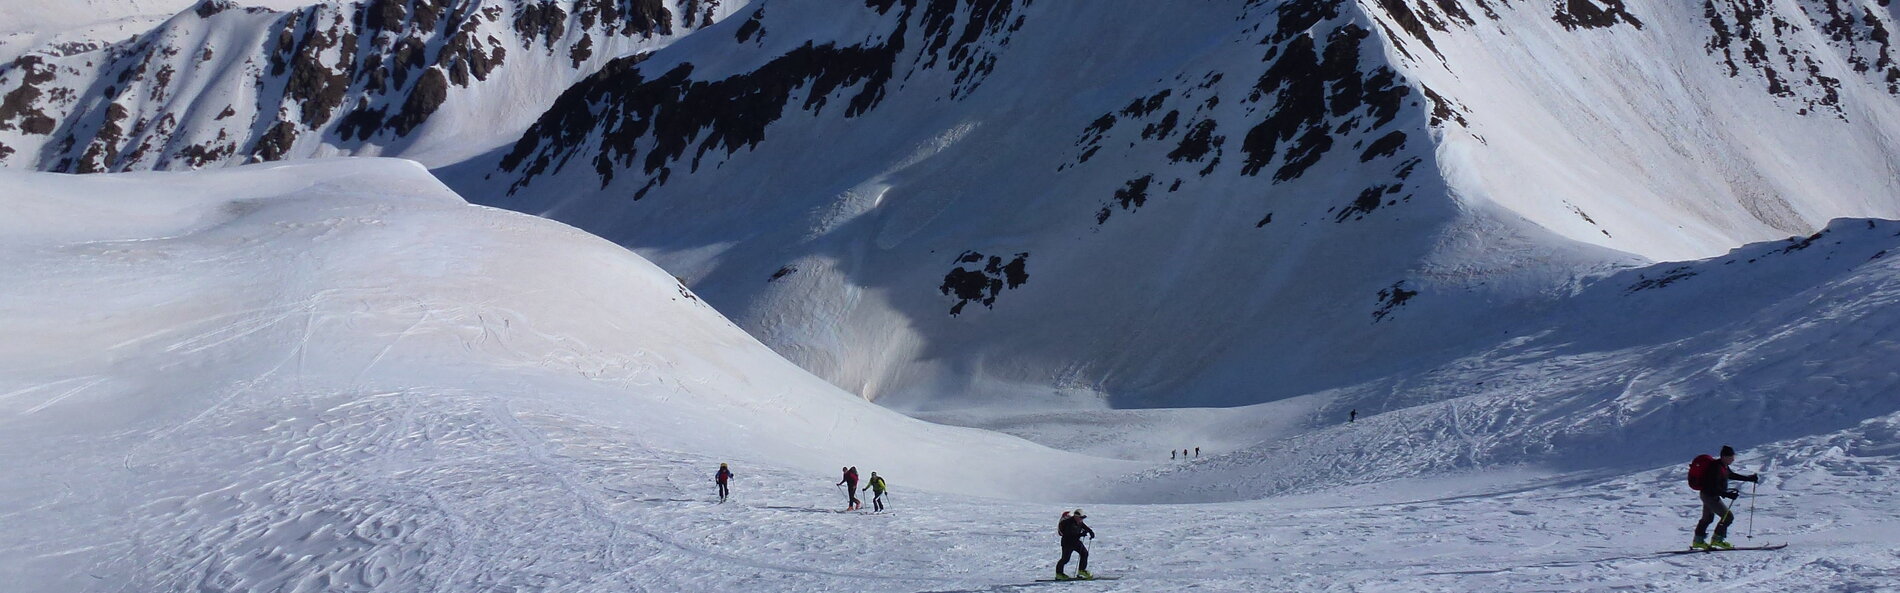 Aufstieg mehrerer Skitourengeher auf einer sonnigen Bergflanke mit leichten Schneeverwehungen © Nationalpark Hohe Tauern; Wurzacher